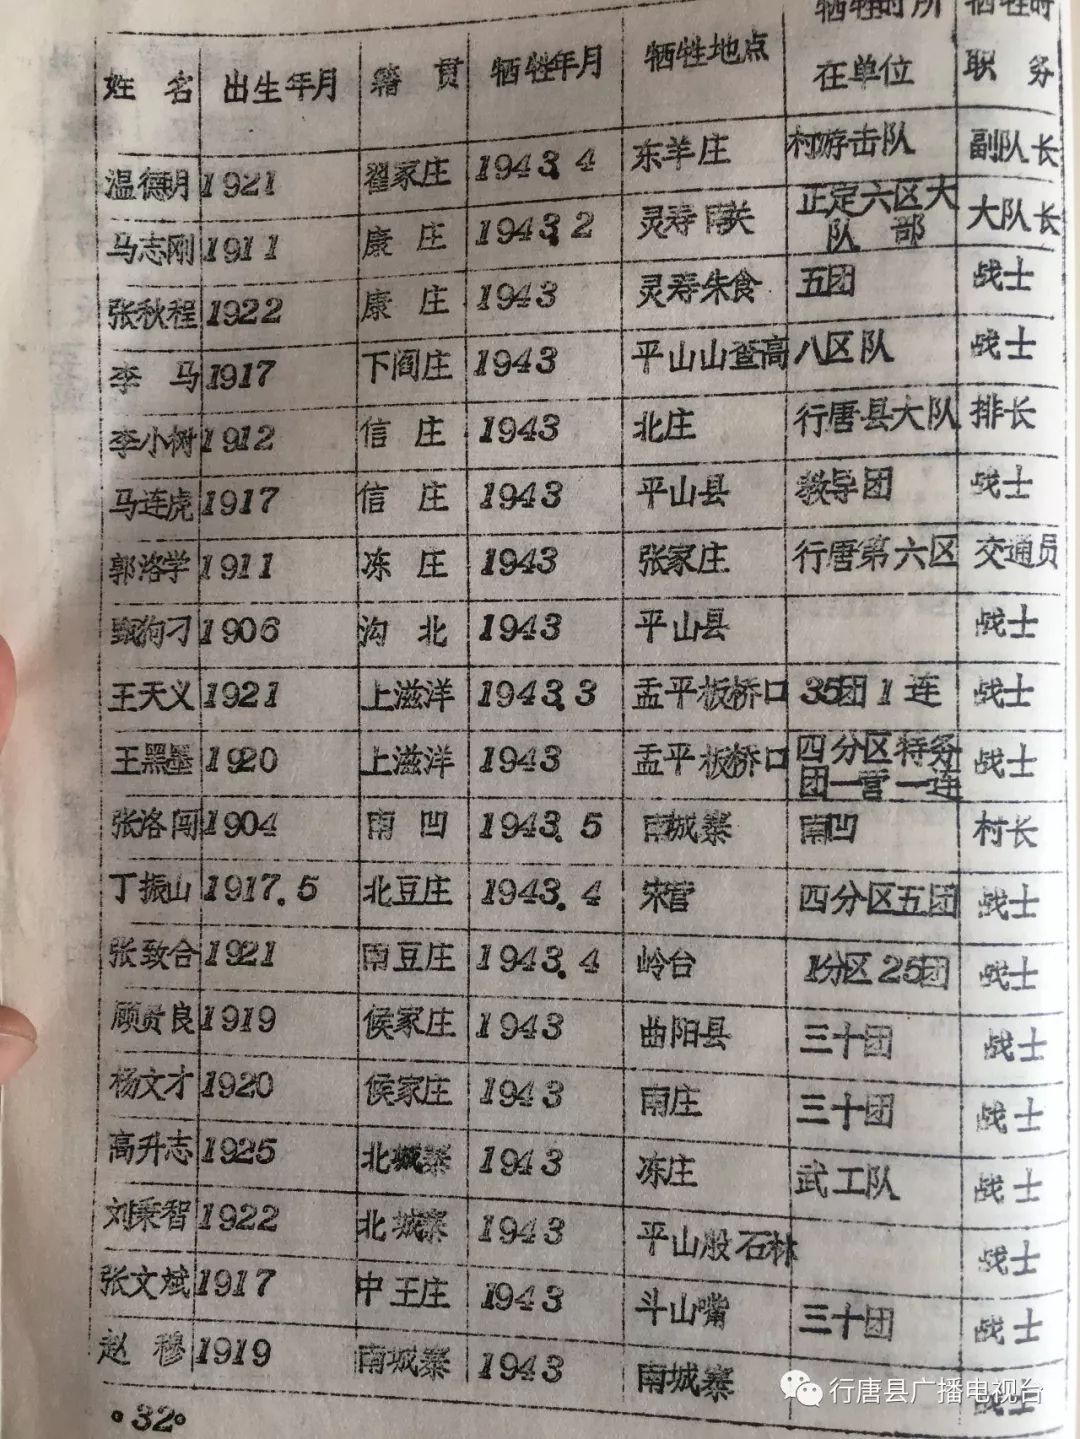 珍贵资料行唐县抗日战争时期烈士英名录